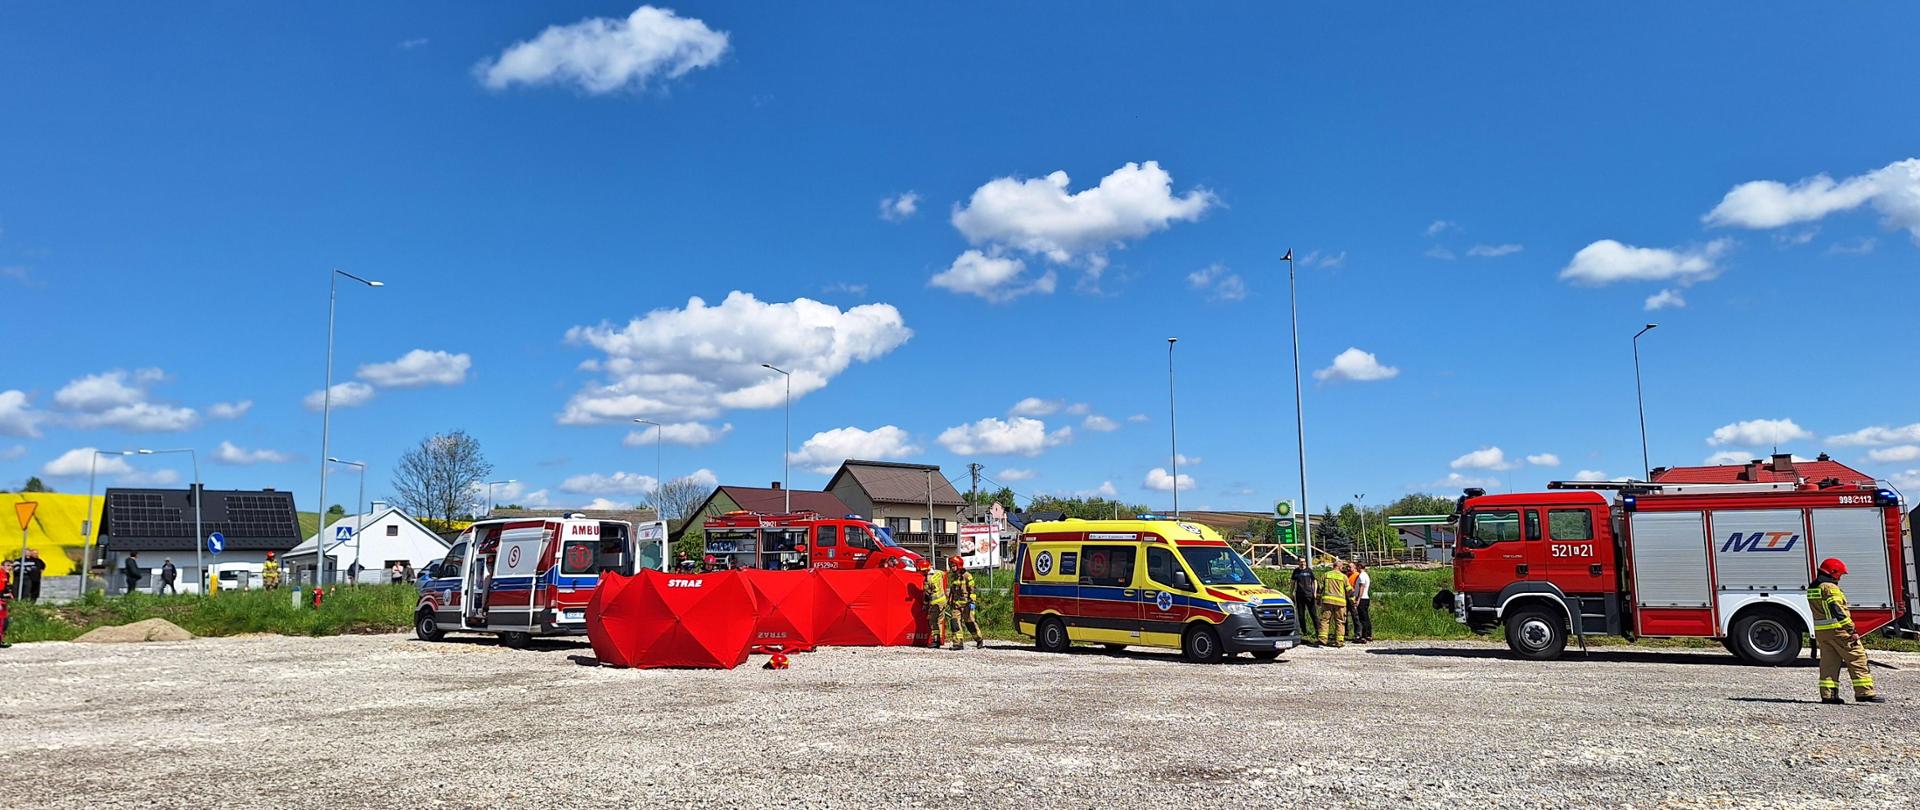 Na zdjęciu stoją samochody strażackie, karetka pogotowia oraz parawany za którymi udzielana jest pierwsza pomoc poszkodowanym